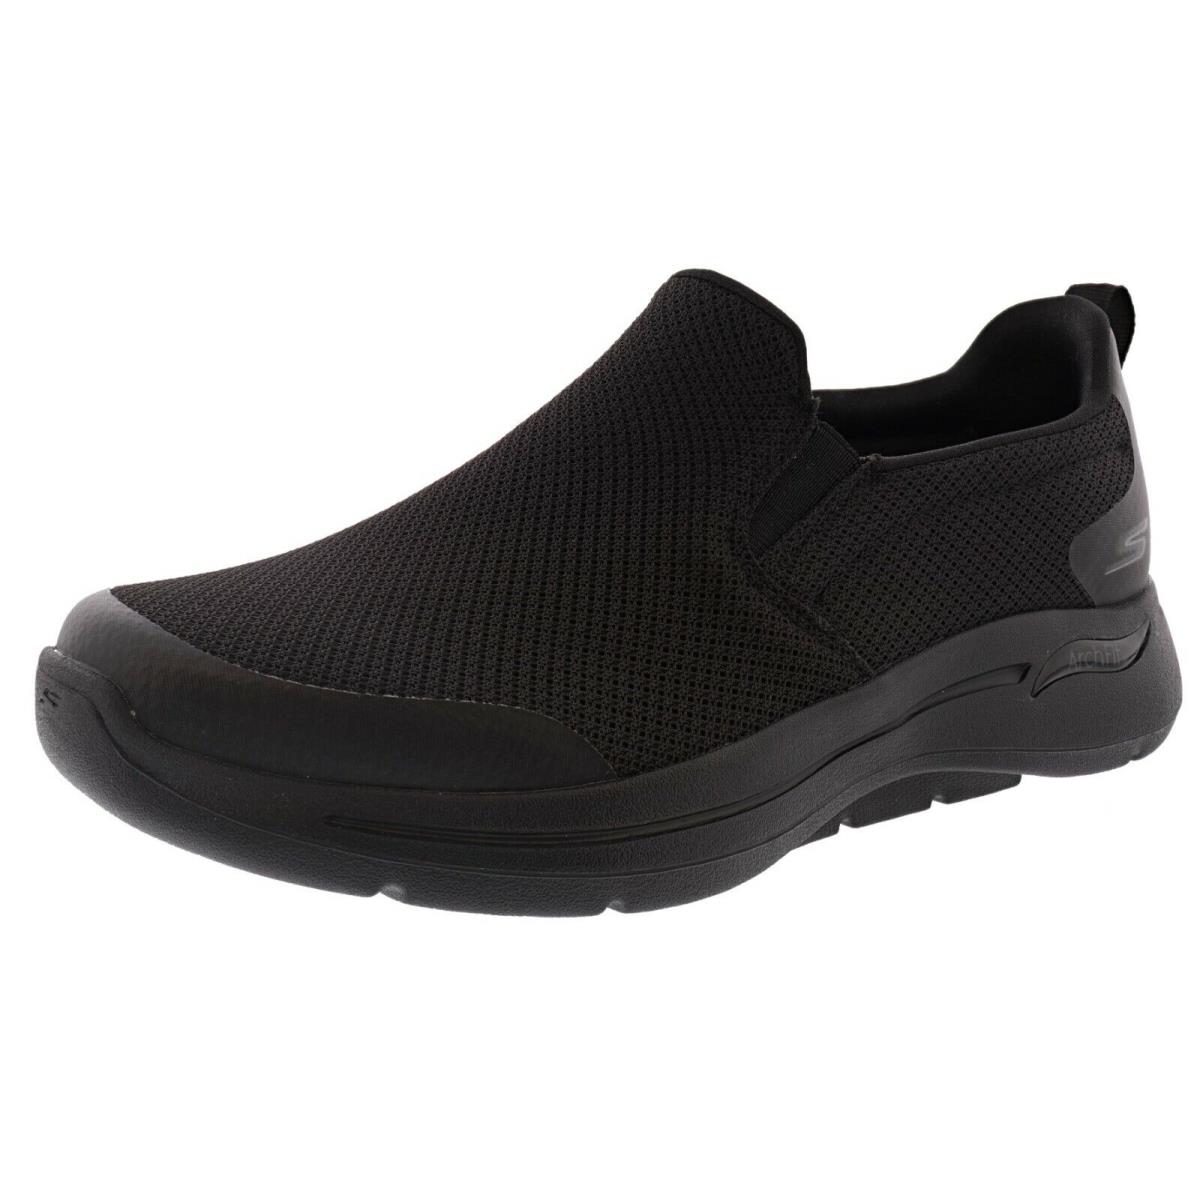 Skechers Men`s GO Walk Arch Fit-togpath 216121 Walking Shoes BLACK / BLACK